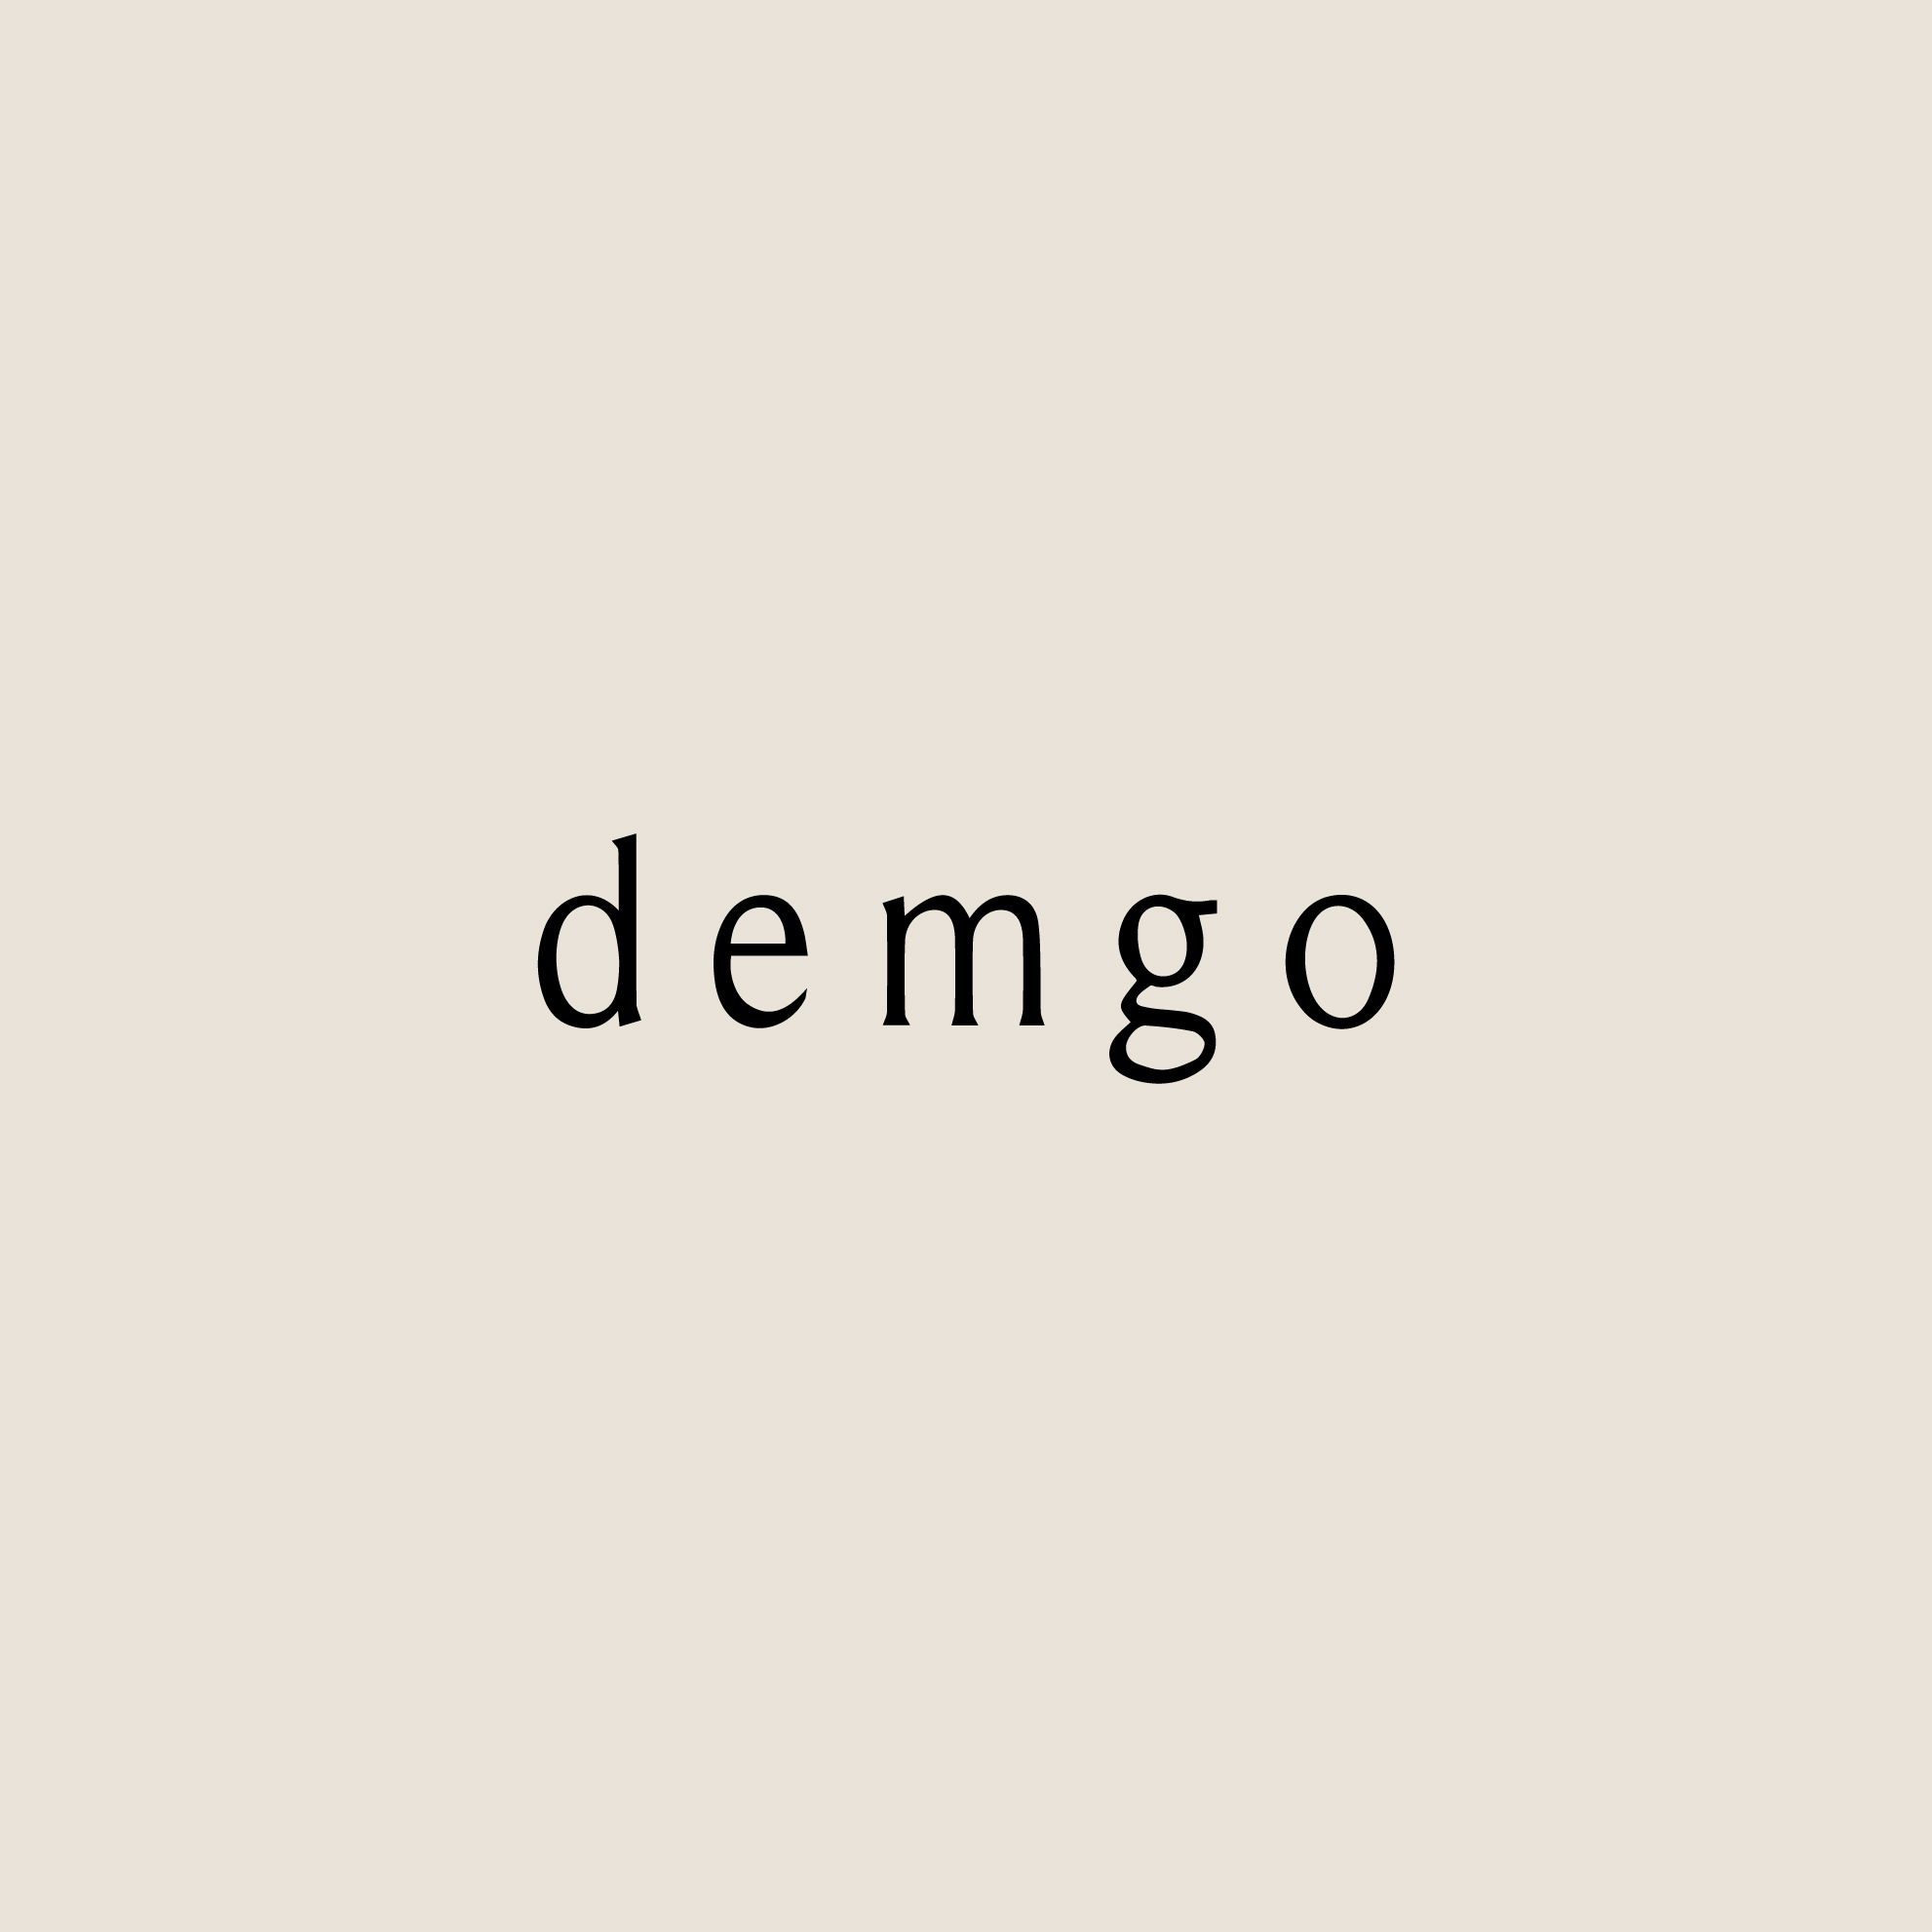 demgo by Débora M. Goldenfum